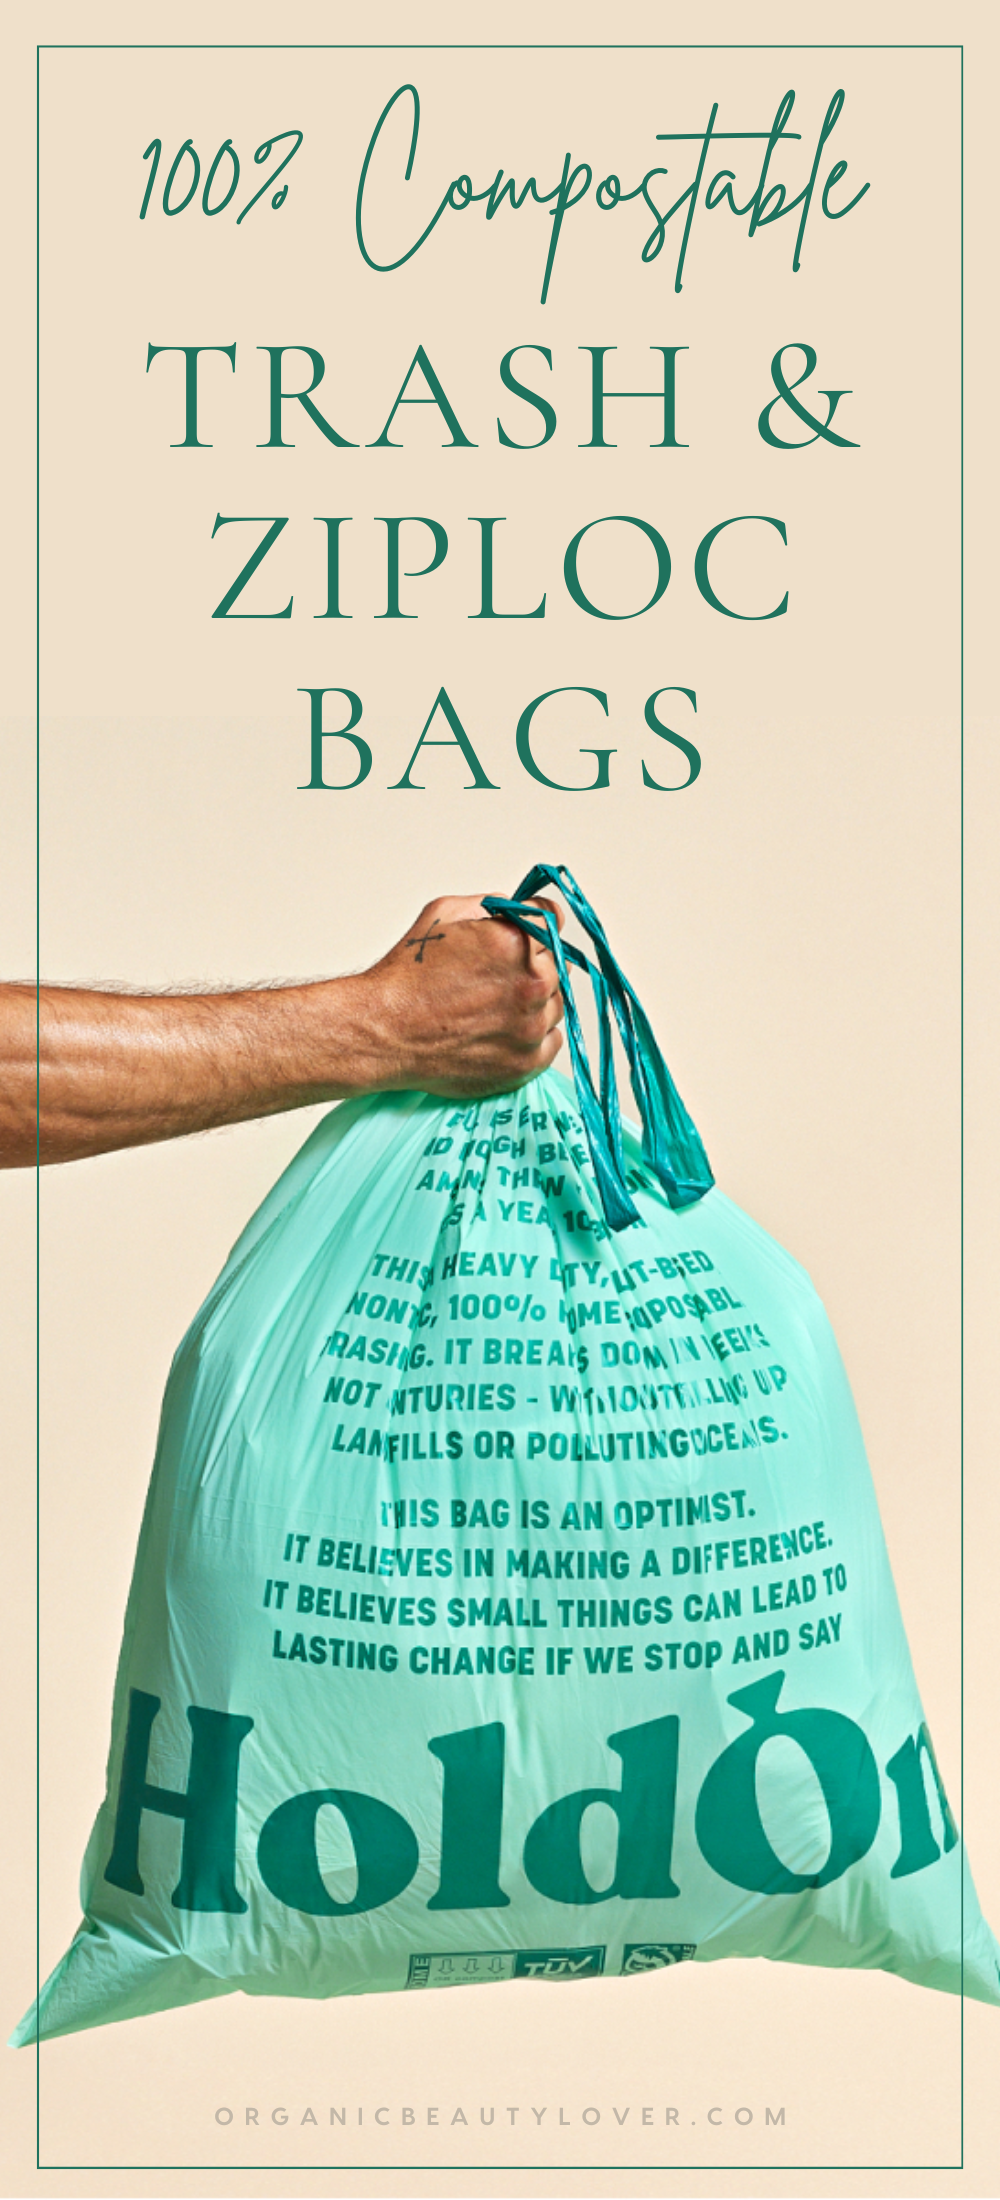 Holdon Compostable trash bags